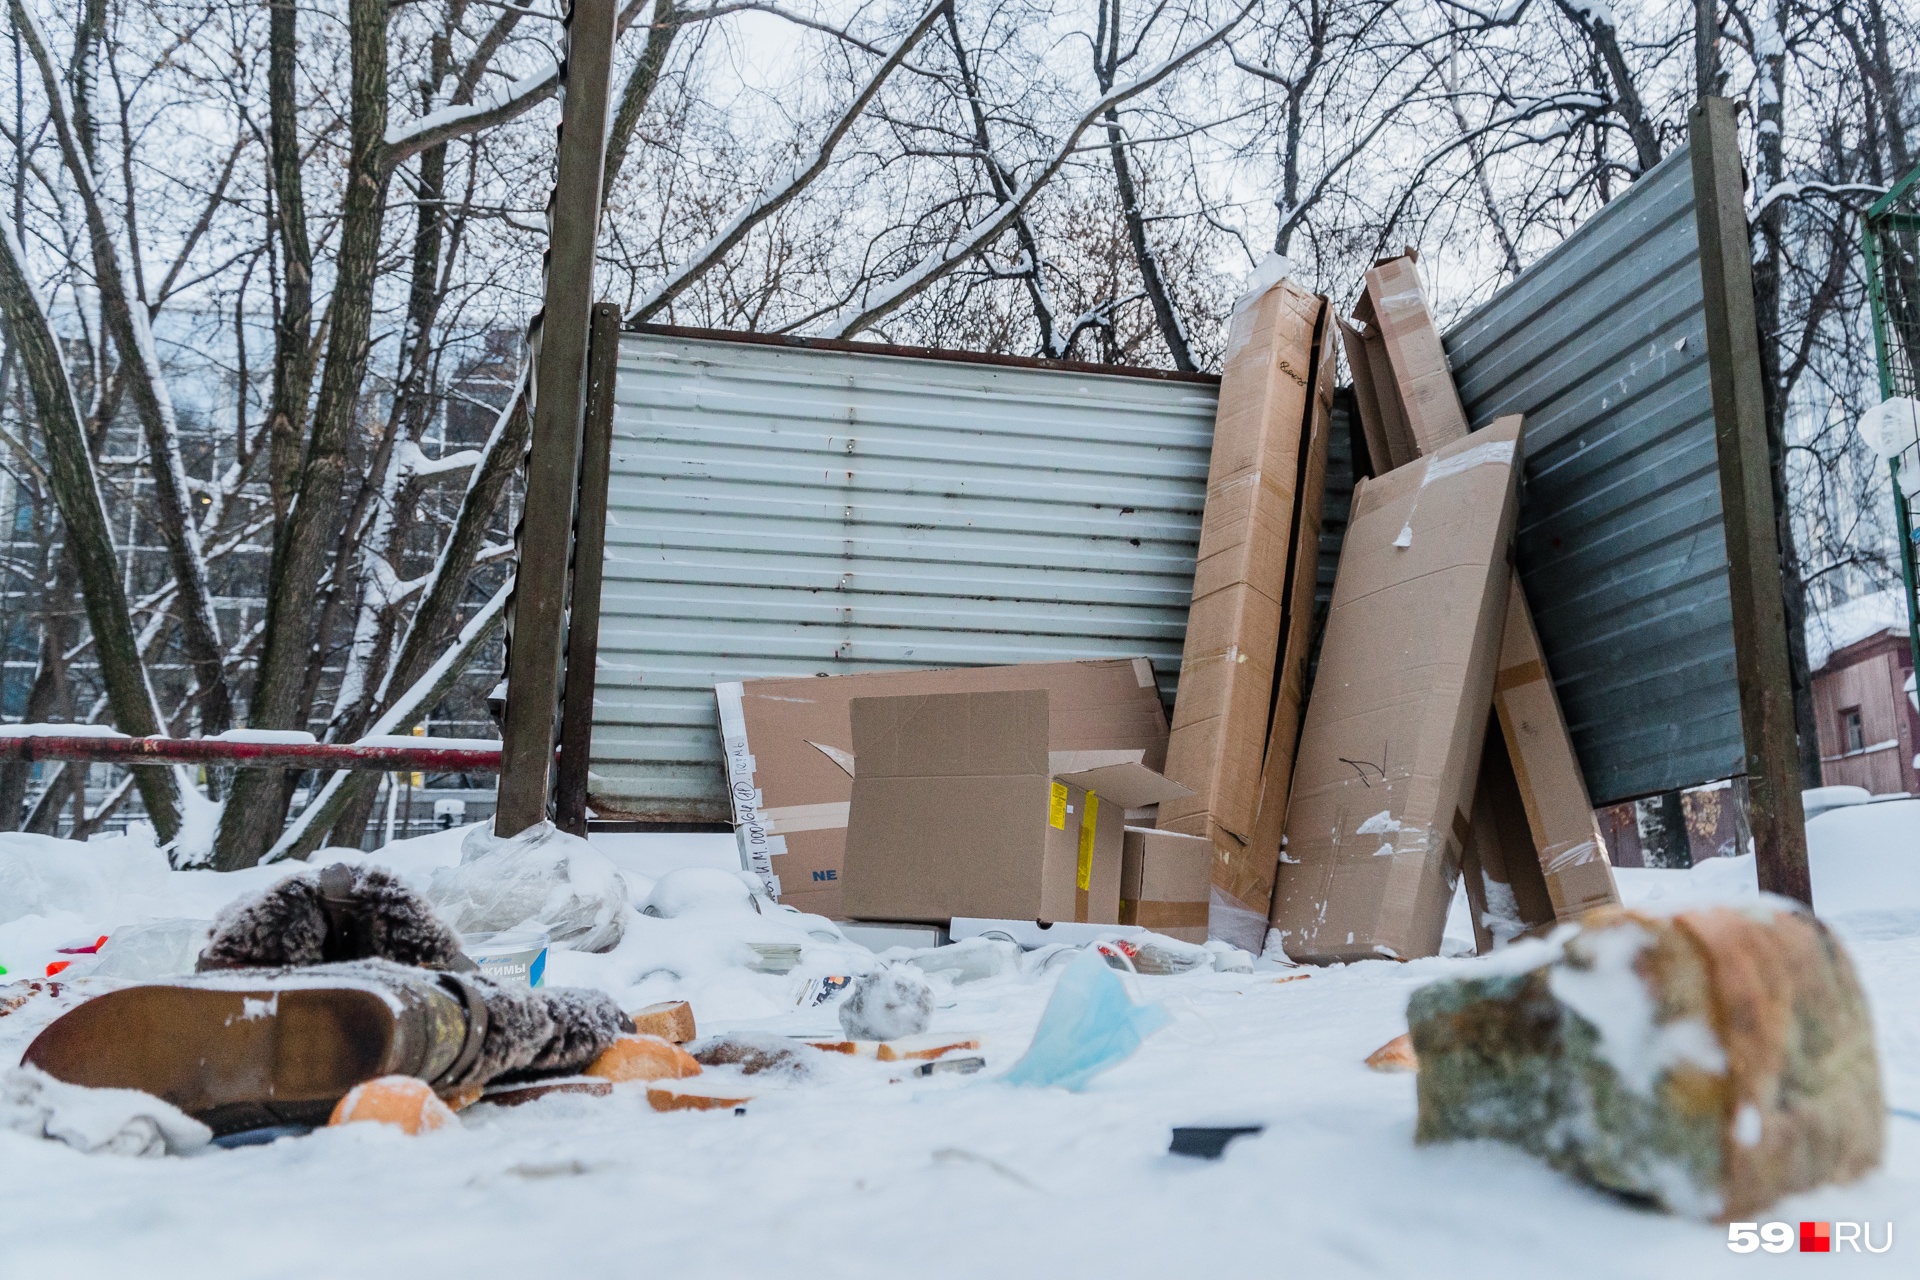 Крупный мусор, картон или дерево  можно отнести на помойку. Телевизор — нет